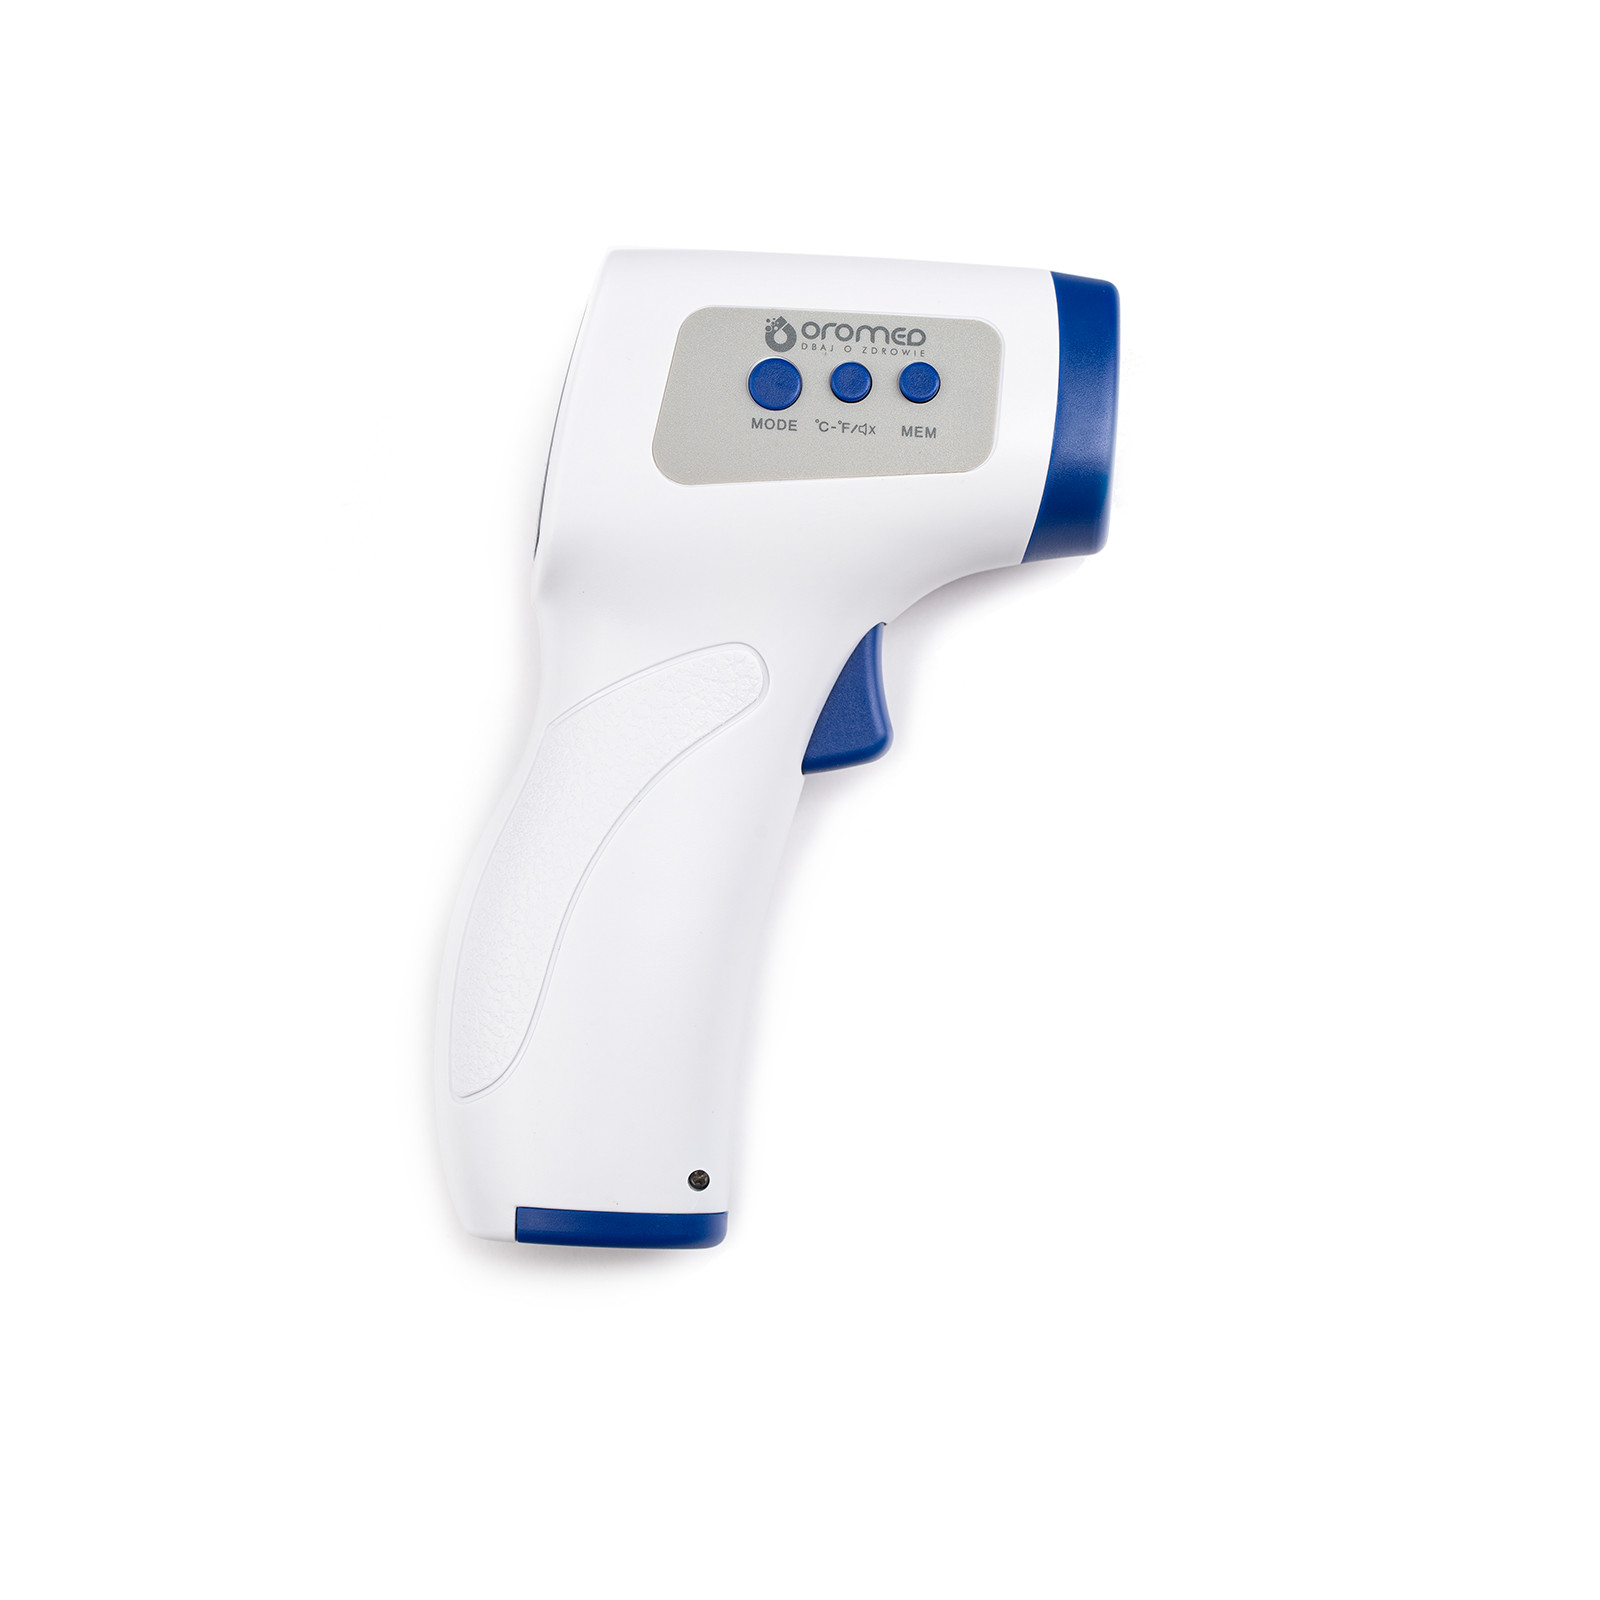 ORO-T60 Termometru infrarosu Perfect Dispozitive medicale